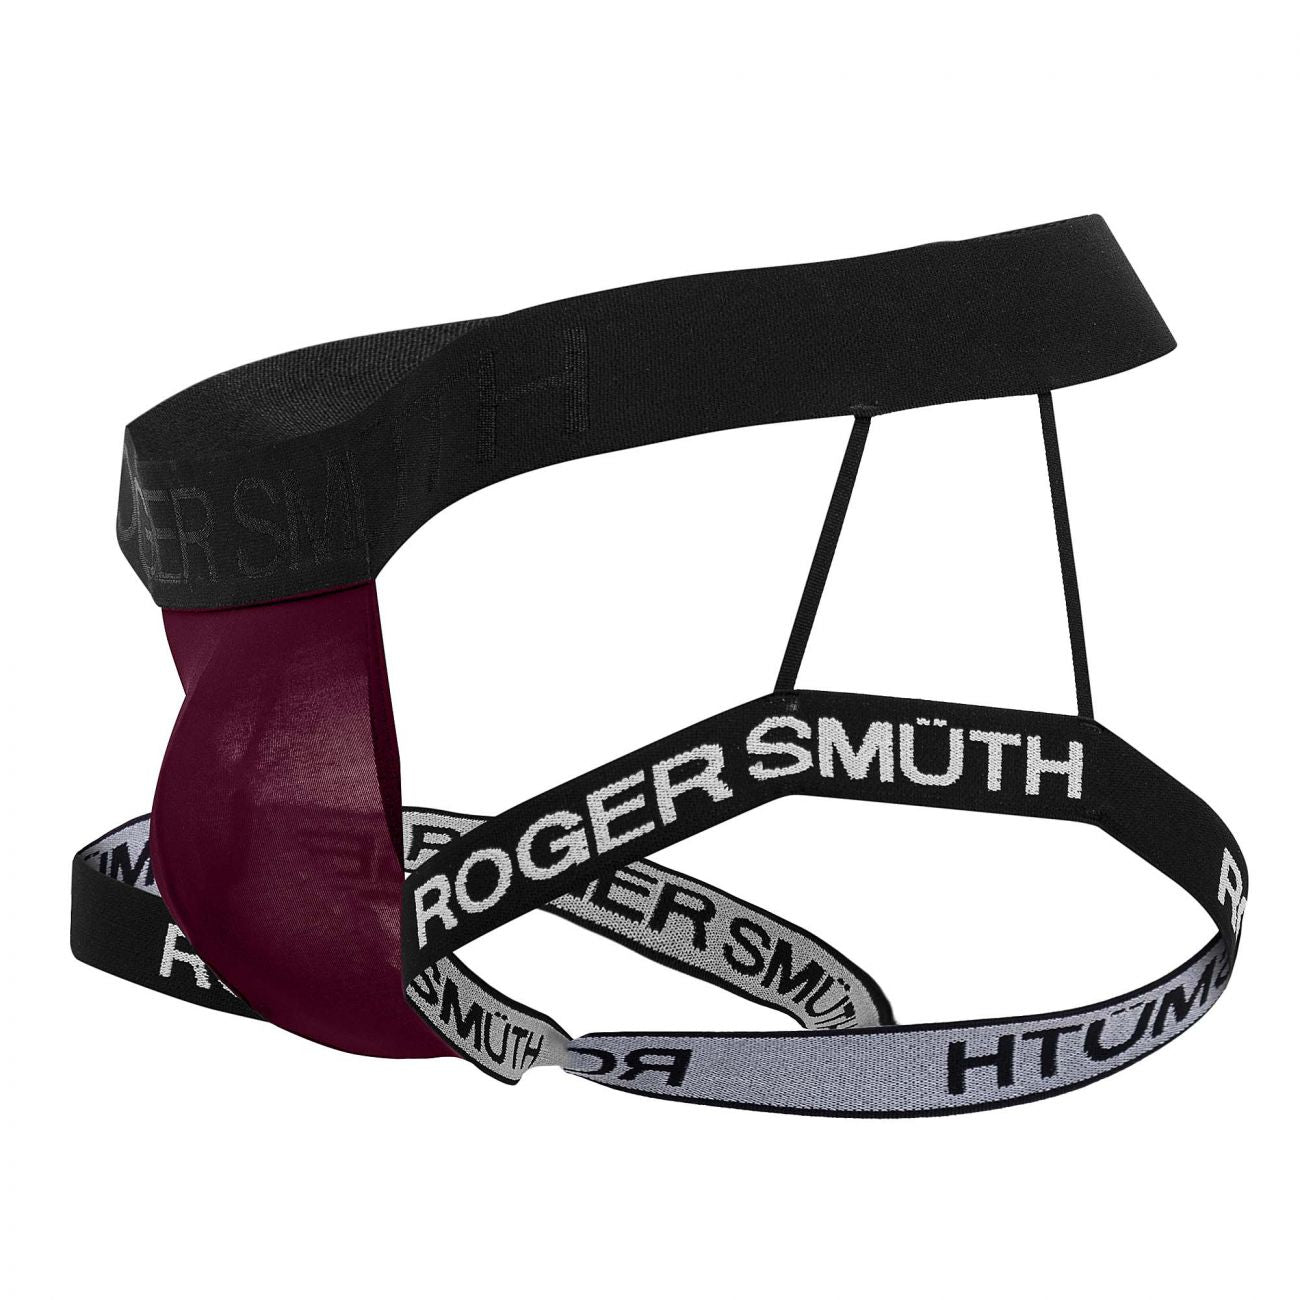 Roger Smuth RS013 Jockstrap Color Burgundy